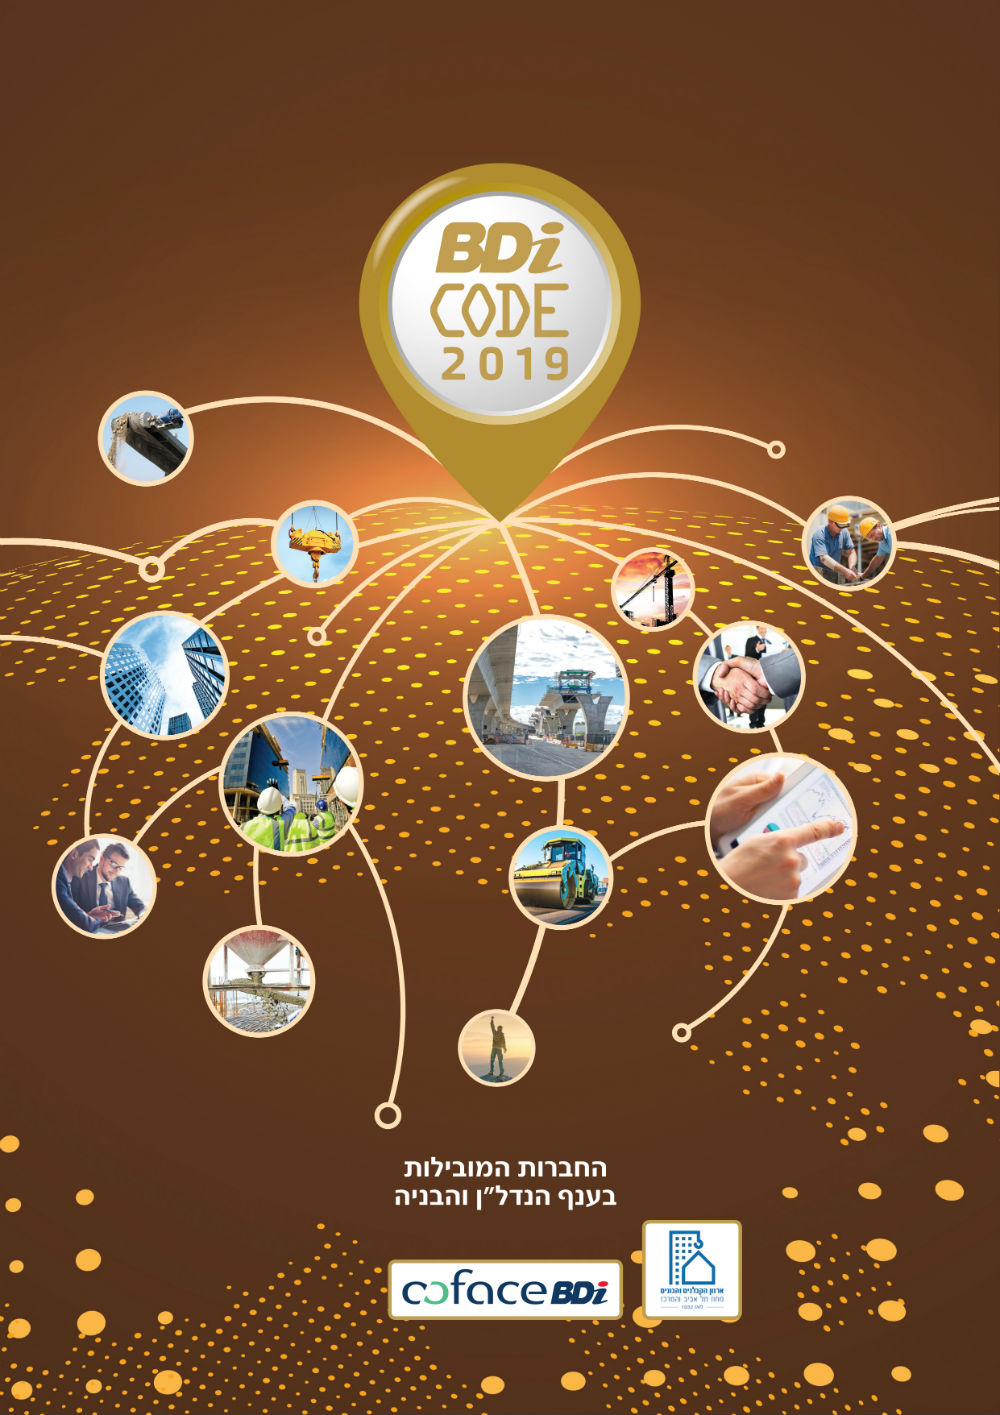 החברות המובילות בענף הנדל"ן והבניה  לשנת 2019 במהדורה הדיגיטלית